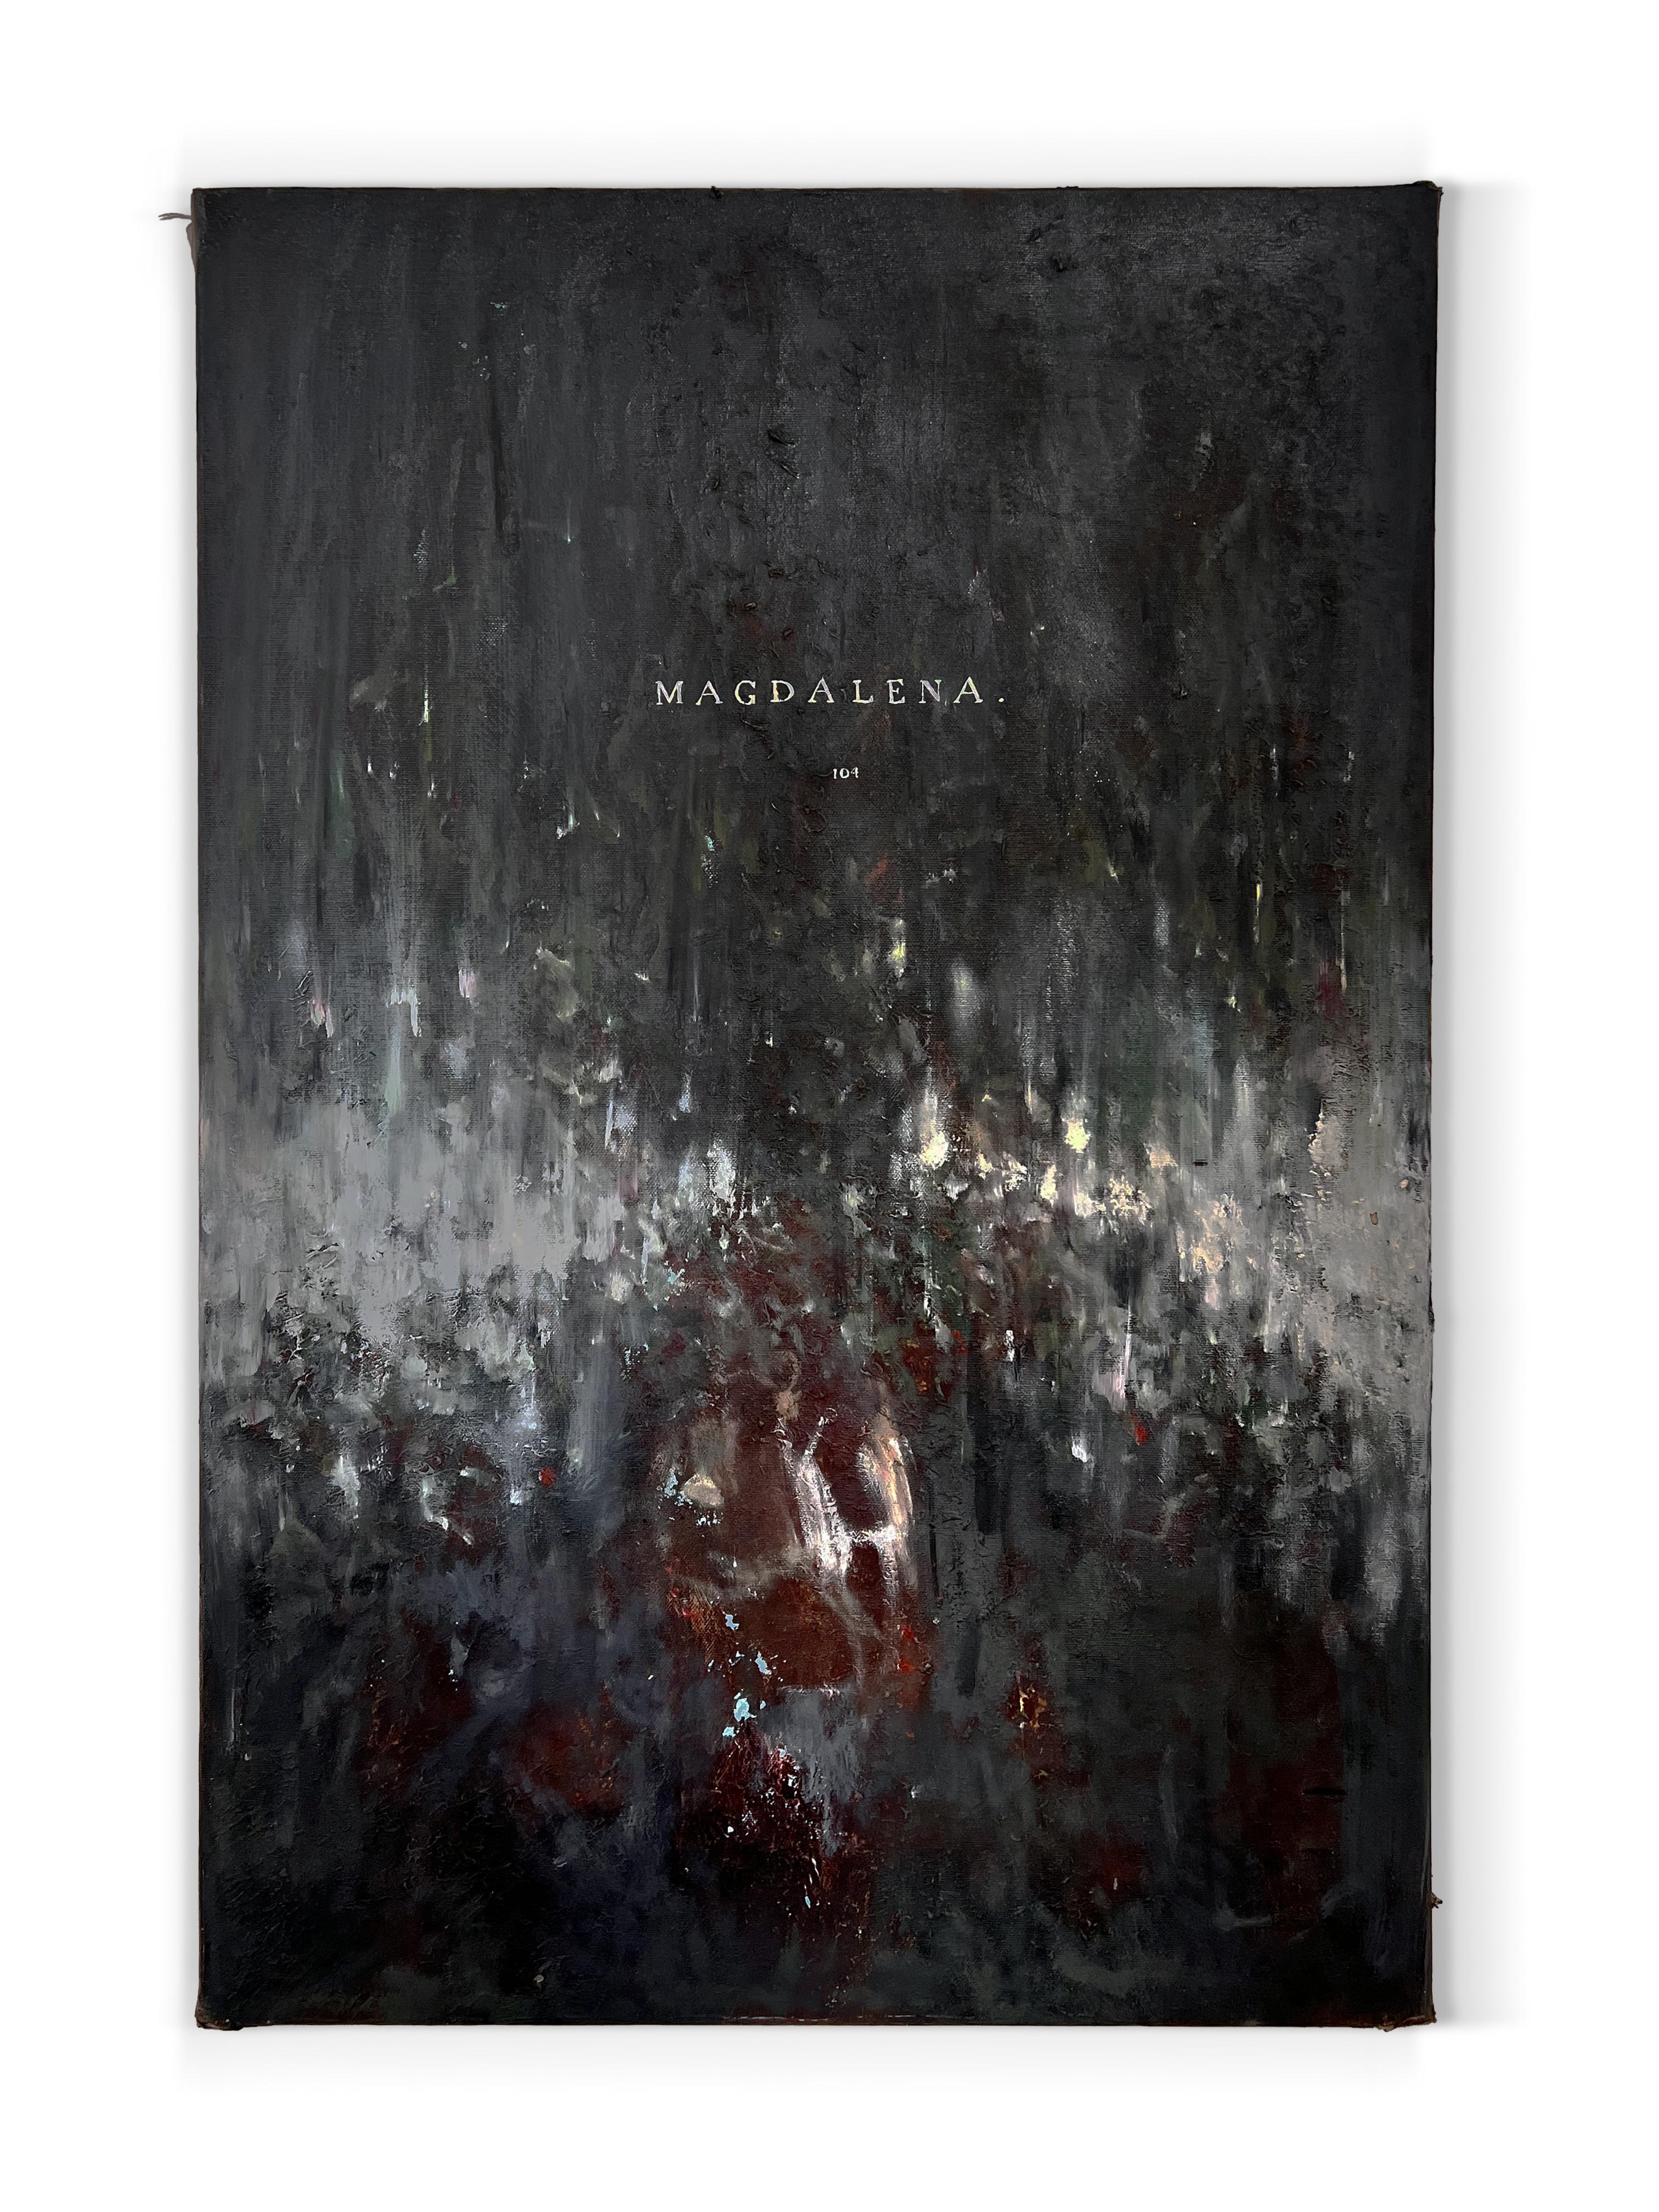 „Magdalena“ (Schwarz-Weiß, Rot, Textart, abstrakt, surreal, dunkel, geheimnisvoll) – Painting von Nicholas Evans